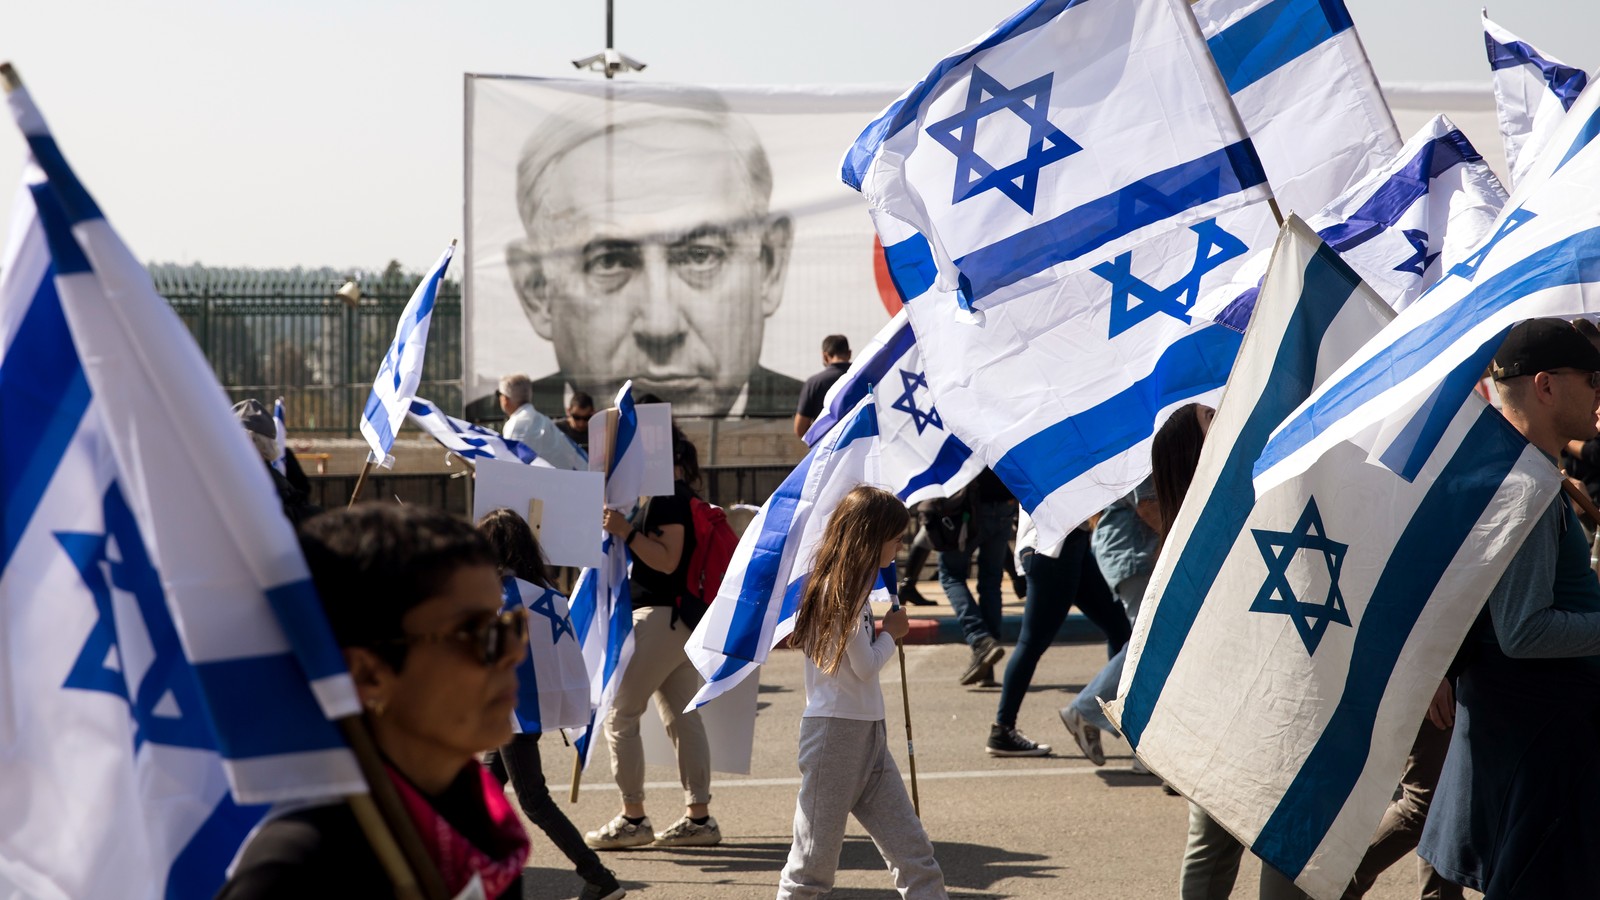 Guerra di Gaza, le famiglie degli ostaggi a Netanyahu: "I negoziatori non tornino senza un accordo"